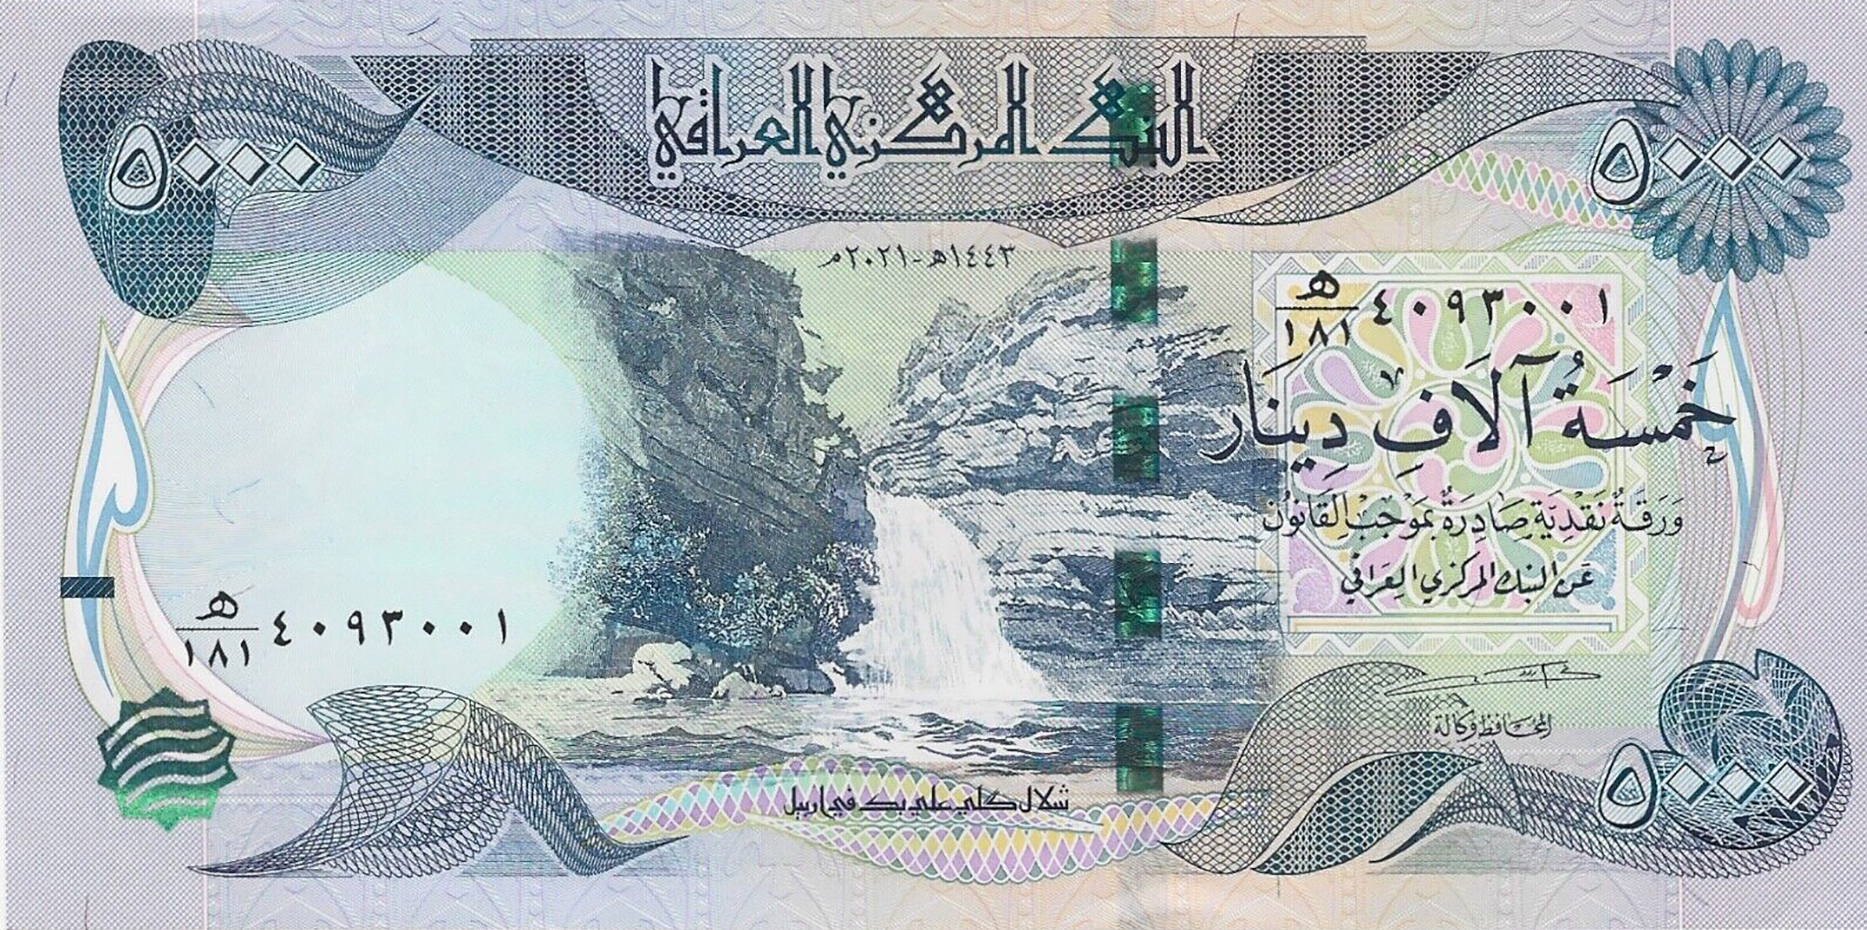 Iraq_CBI_5000_dinars_2013.00.00_B354b_P1